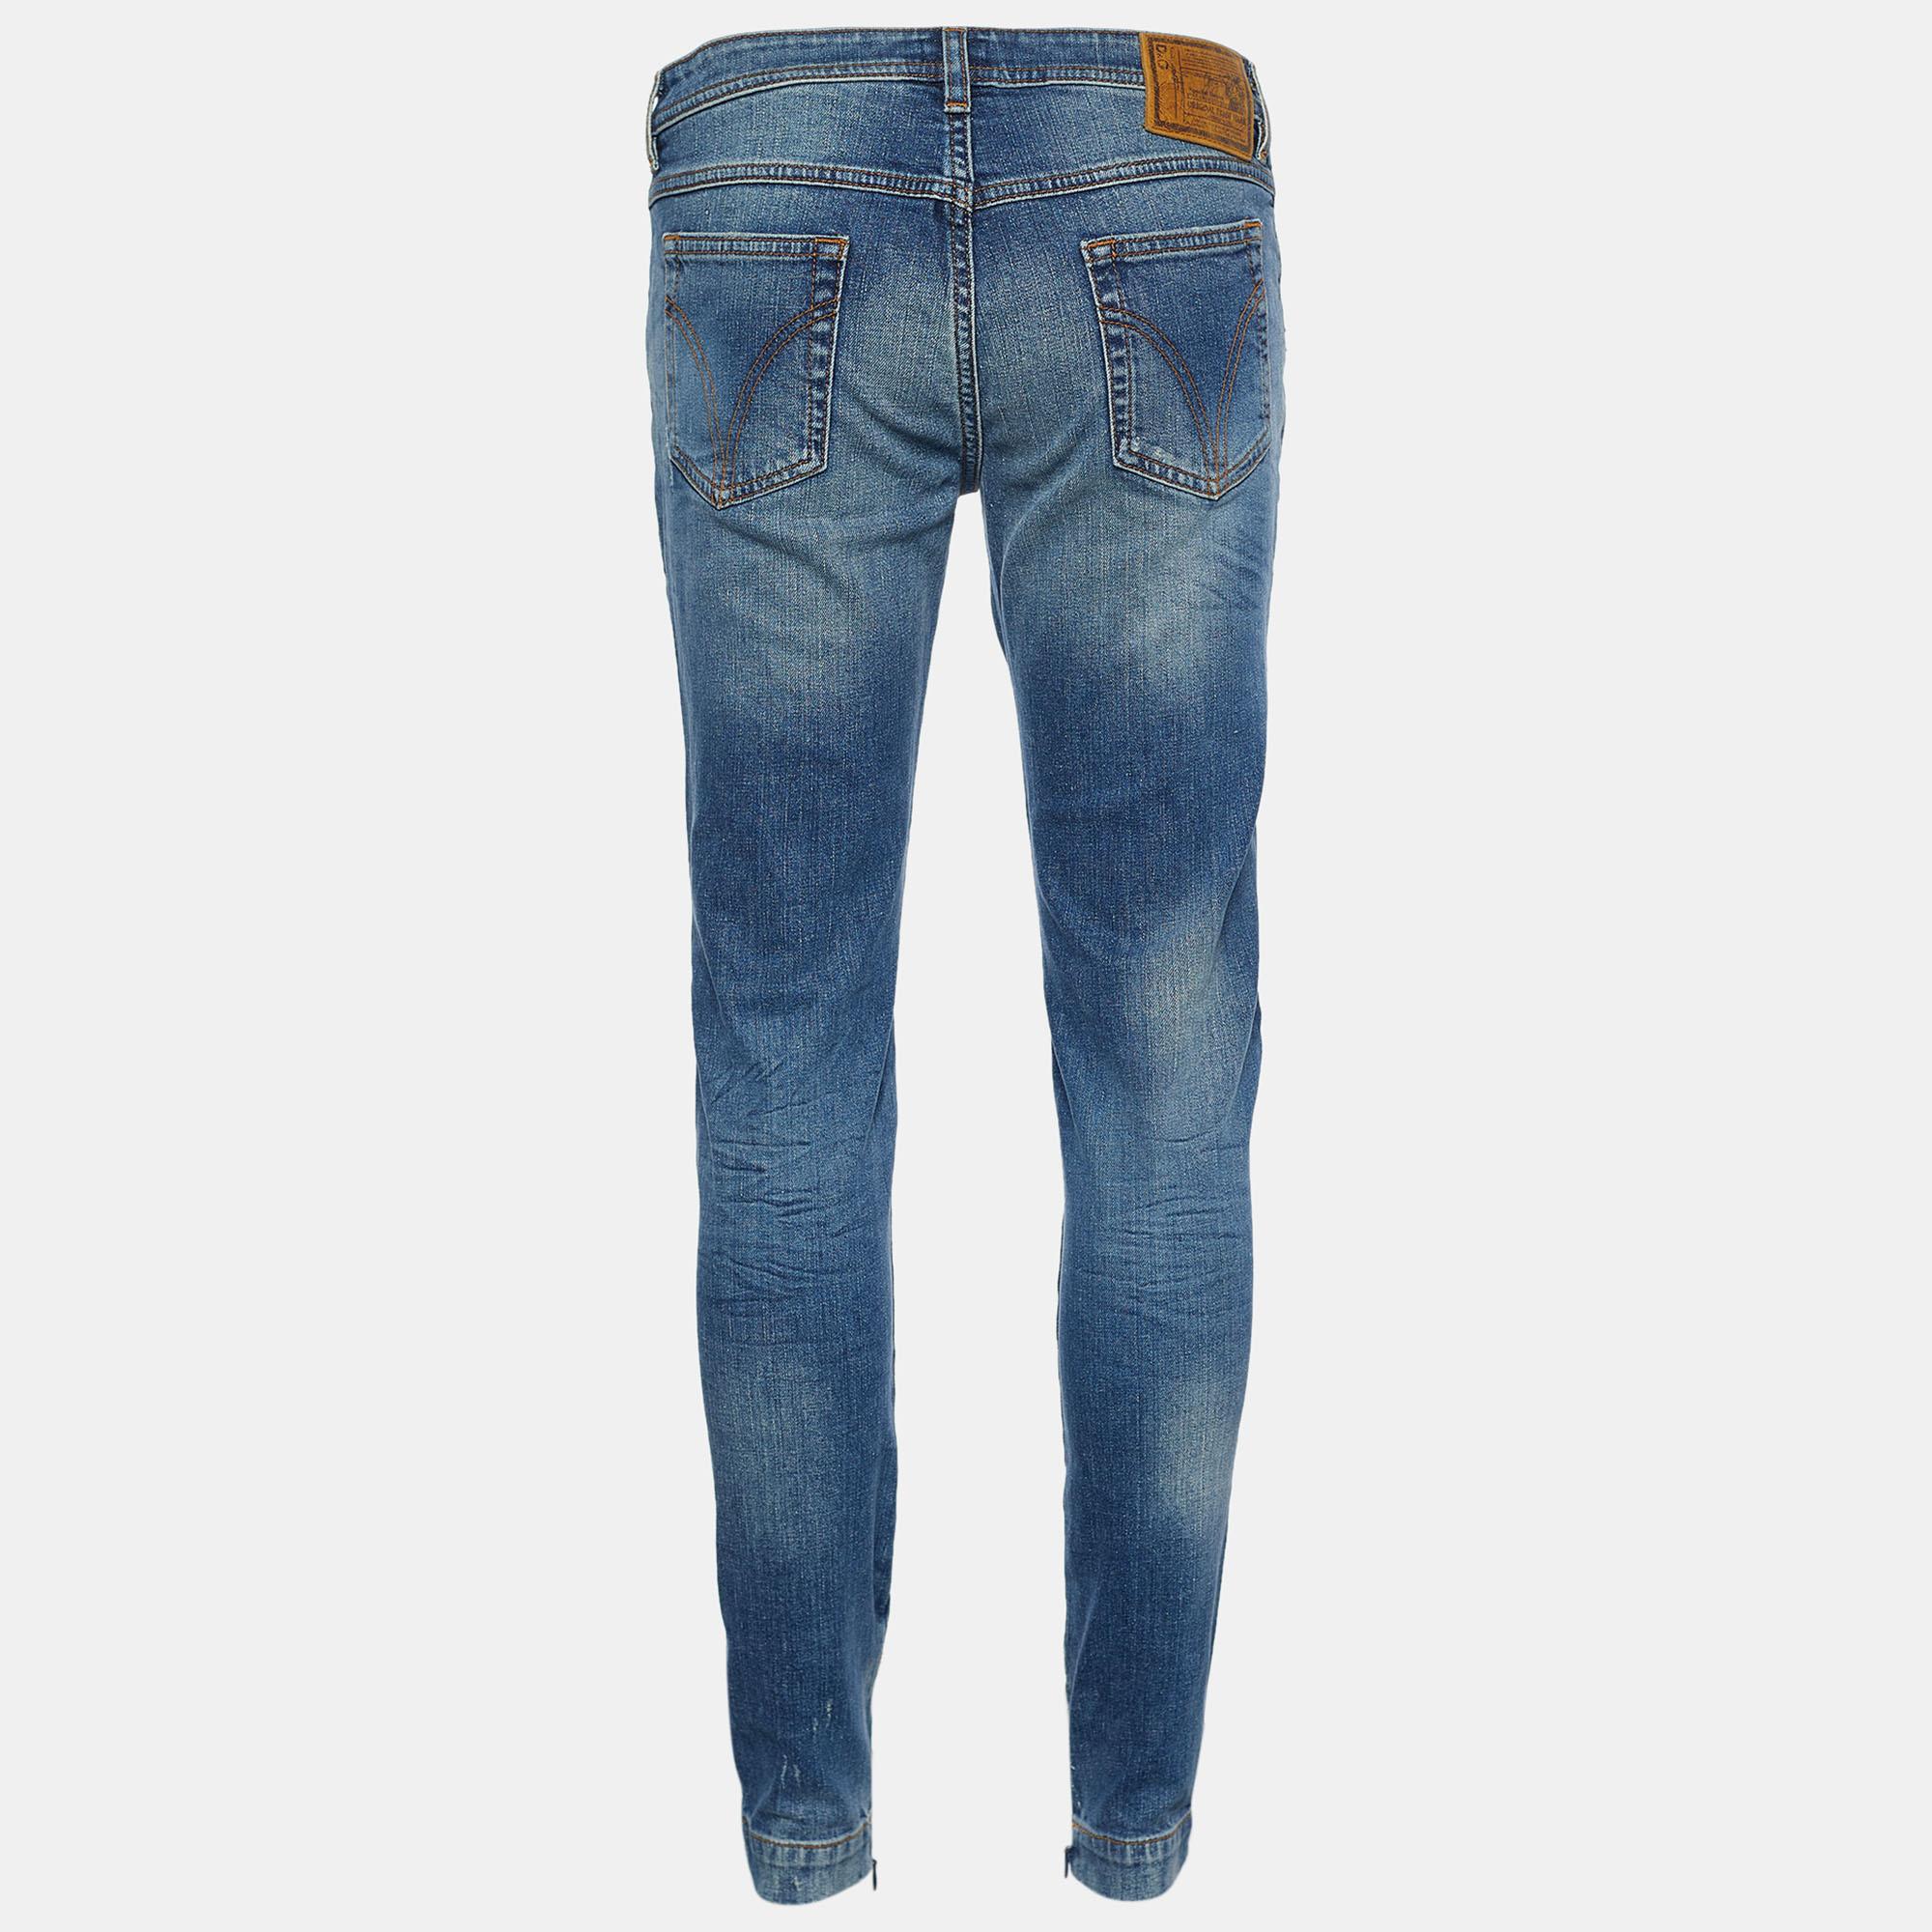 Bequeme und stilvolle Jeans wie diese sind ein absolutes Muss im Kleiderschrank! Diese Jeans von D&G ist super stylisch und schick. Sie wurden aus indigoblauem Distressed Denim-Stoff in einer Skinny-Fit-Silhouette gefertigt. Diese Jeans ist mit